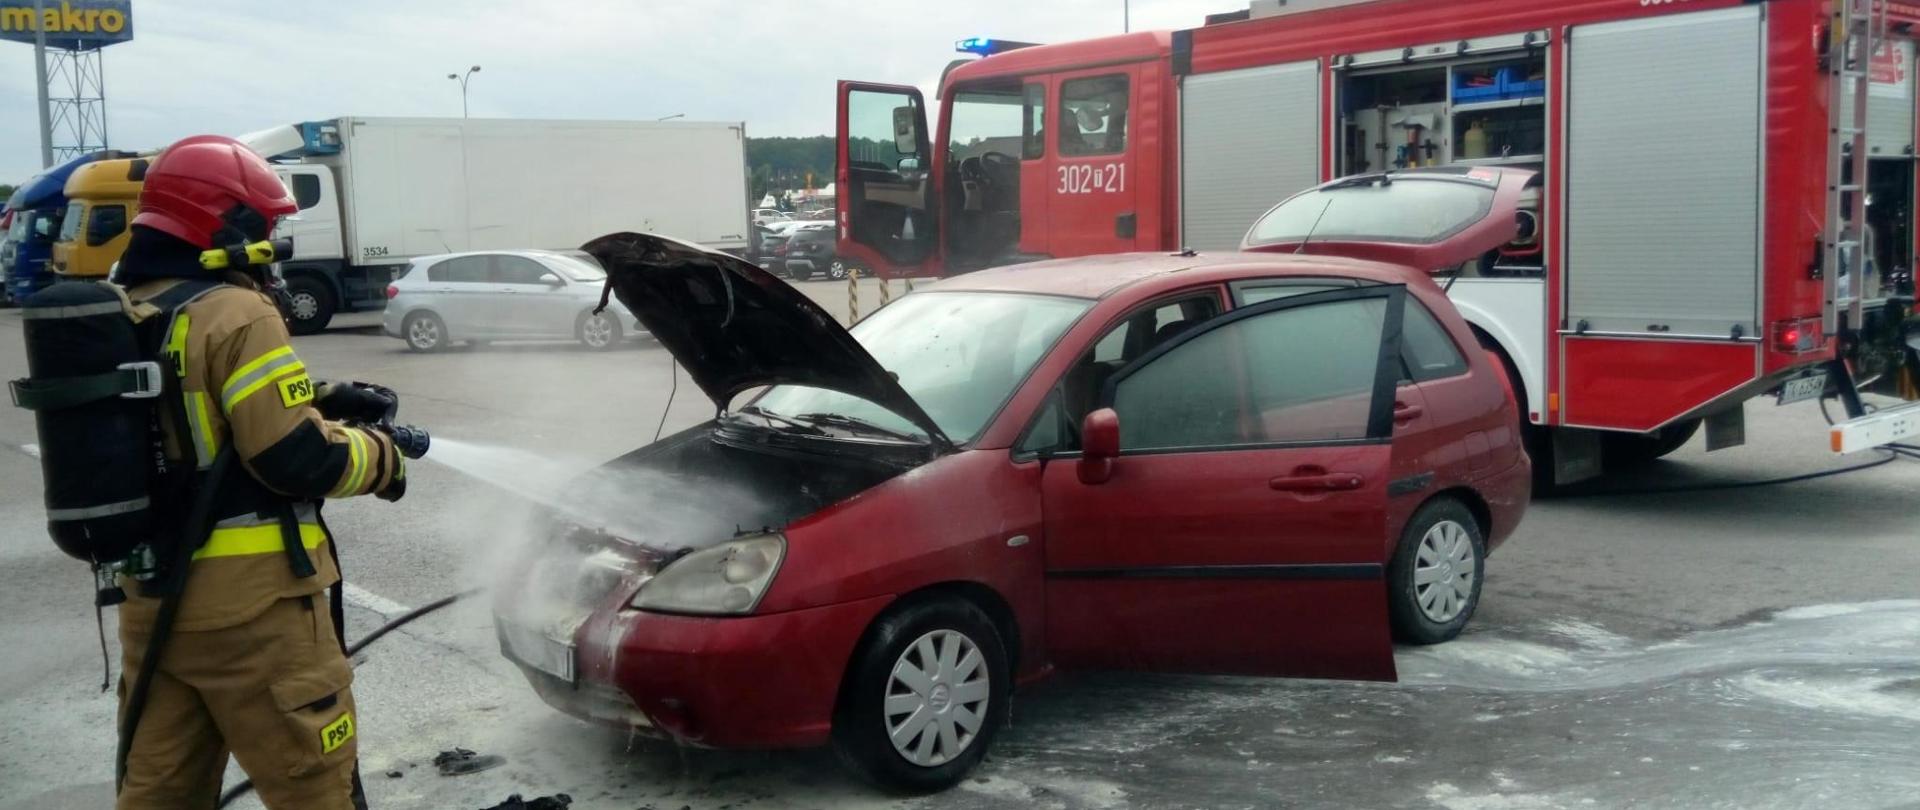 Zdjęcie przedstawia samochód, który uległ spaleniu. Przed nim ratownik podający pianę na komorę silnika, a z tyłu widać zaparkowany samochód pożarniczy.